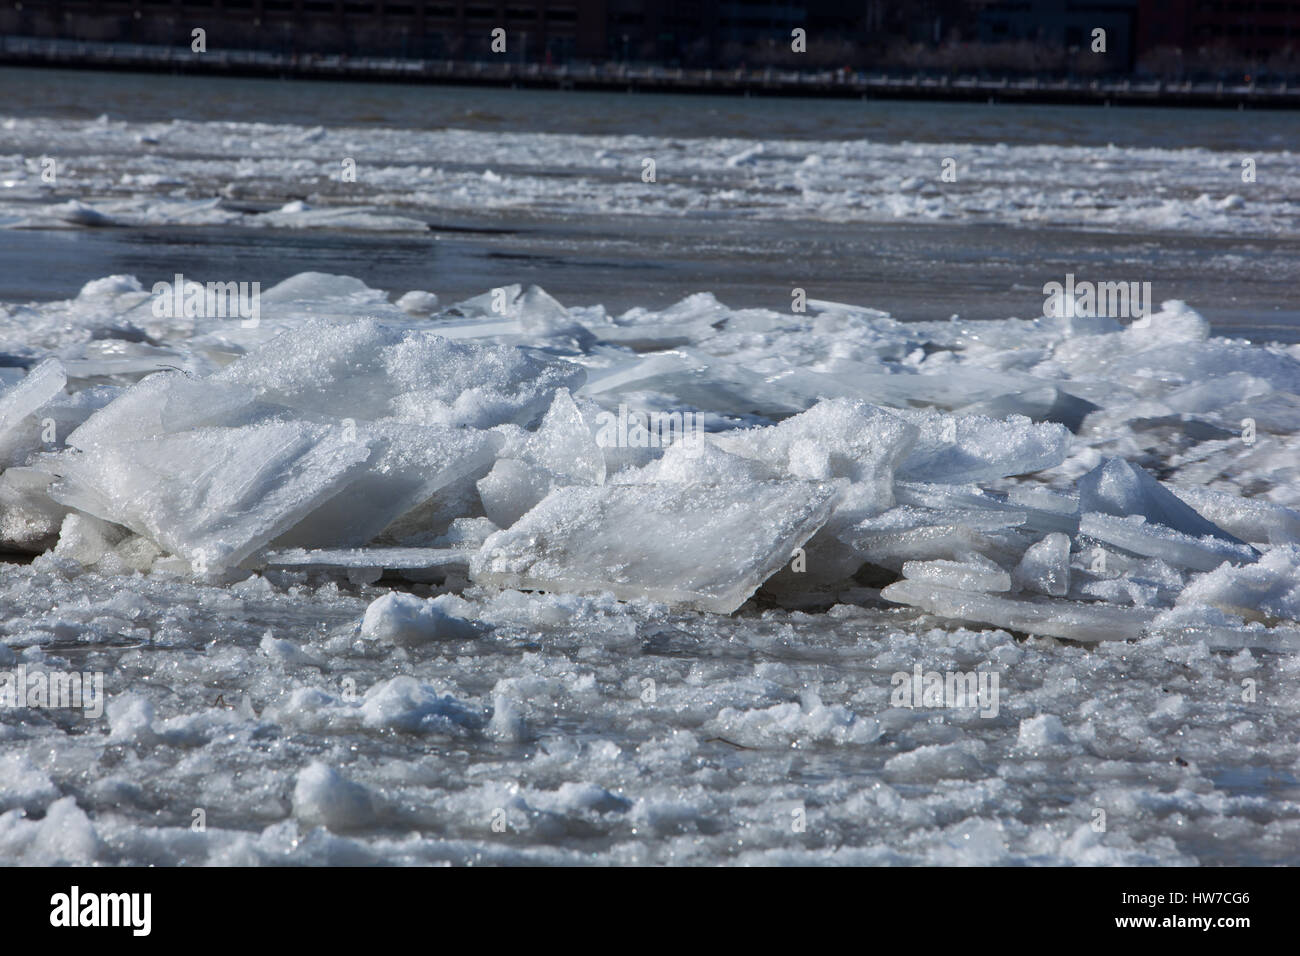 Congelados, nevado bloques de hielo flotando río abajo en una fría tarde de invierno Foto de stock